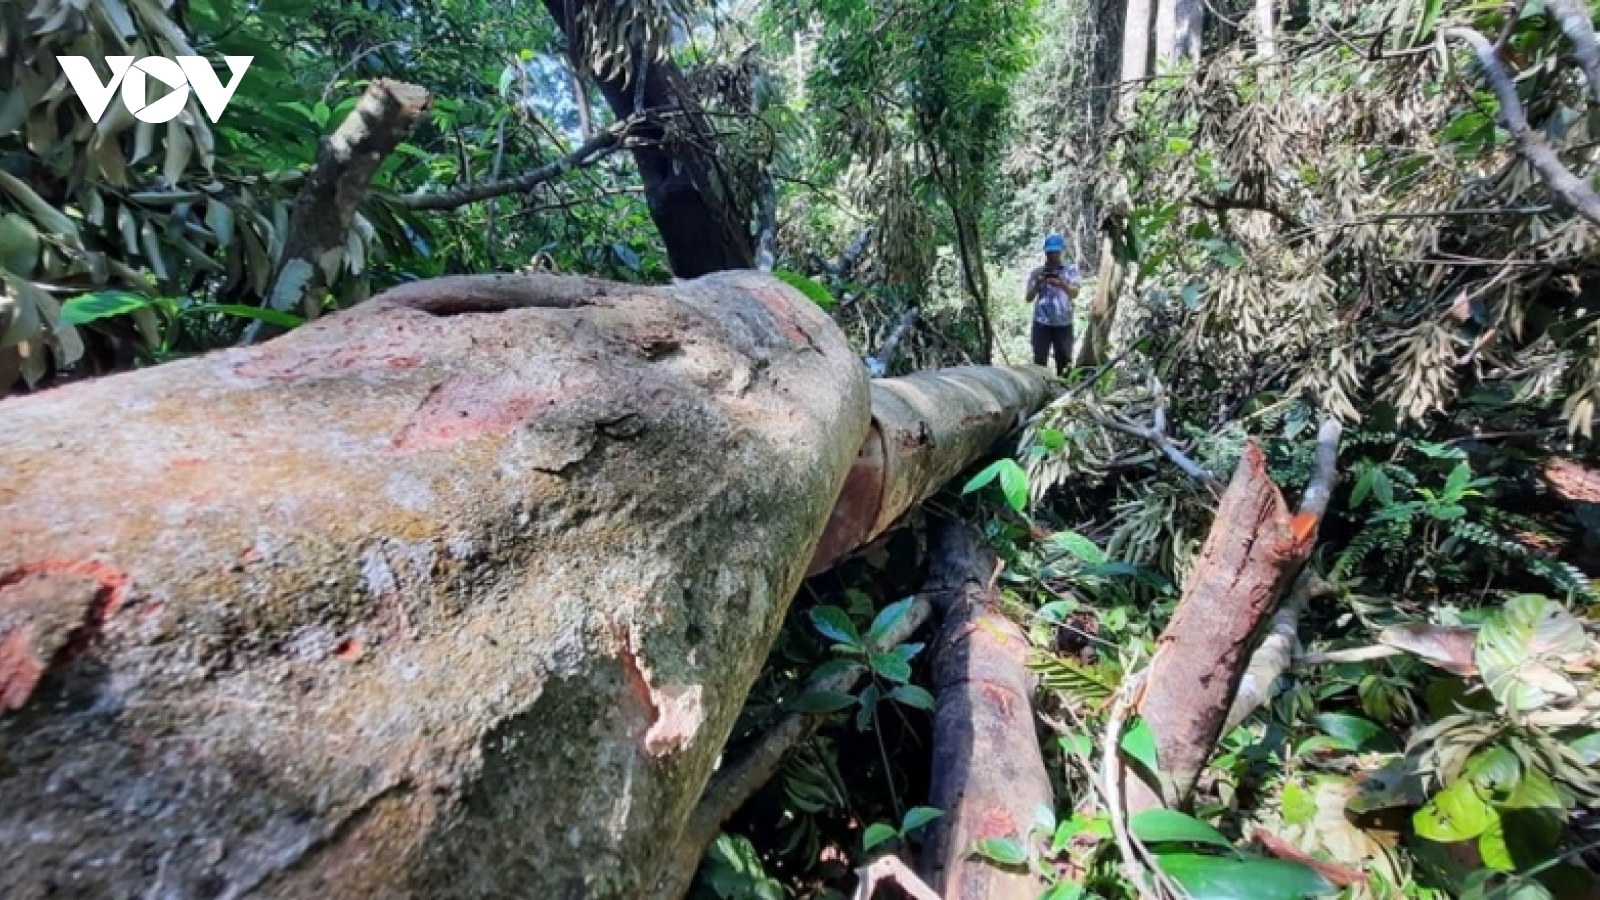 Khẩn trương hoàn chỉnh hồ sơ, khởi tố vụ án phá rừng ở xã Trà Bui (Quảng Nam)